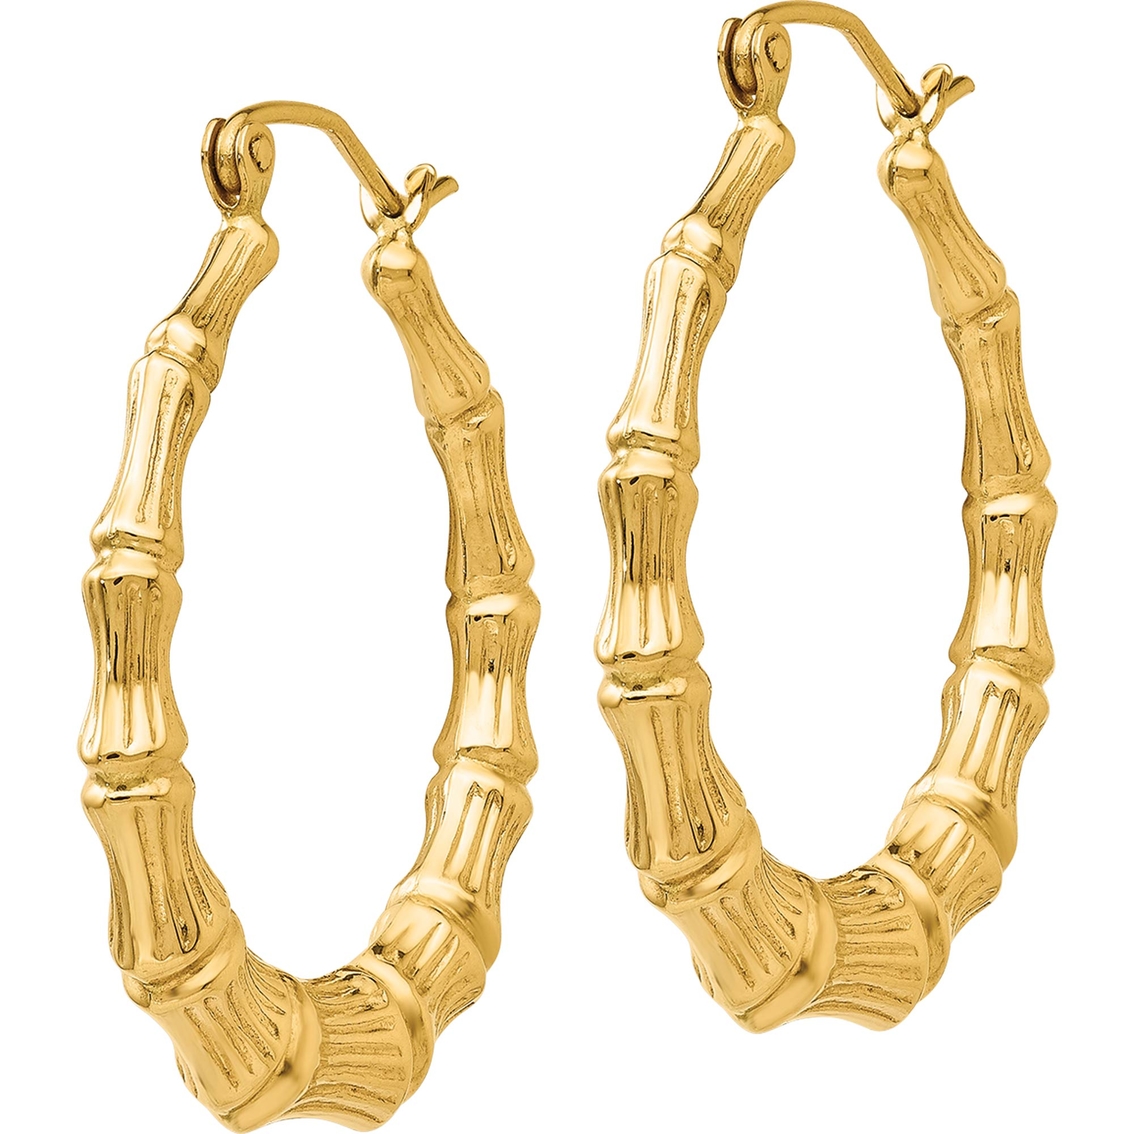 14K Polished Bamboo Hoop Earrings - Image 2 of 2